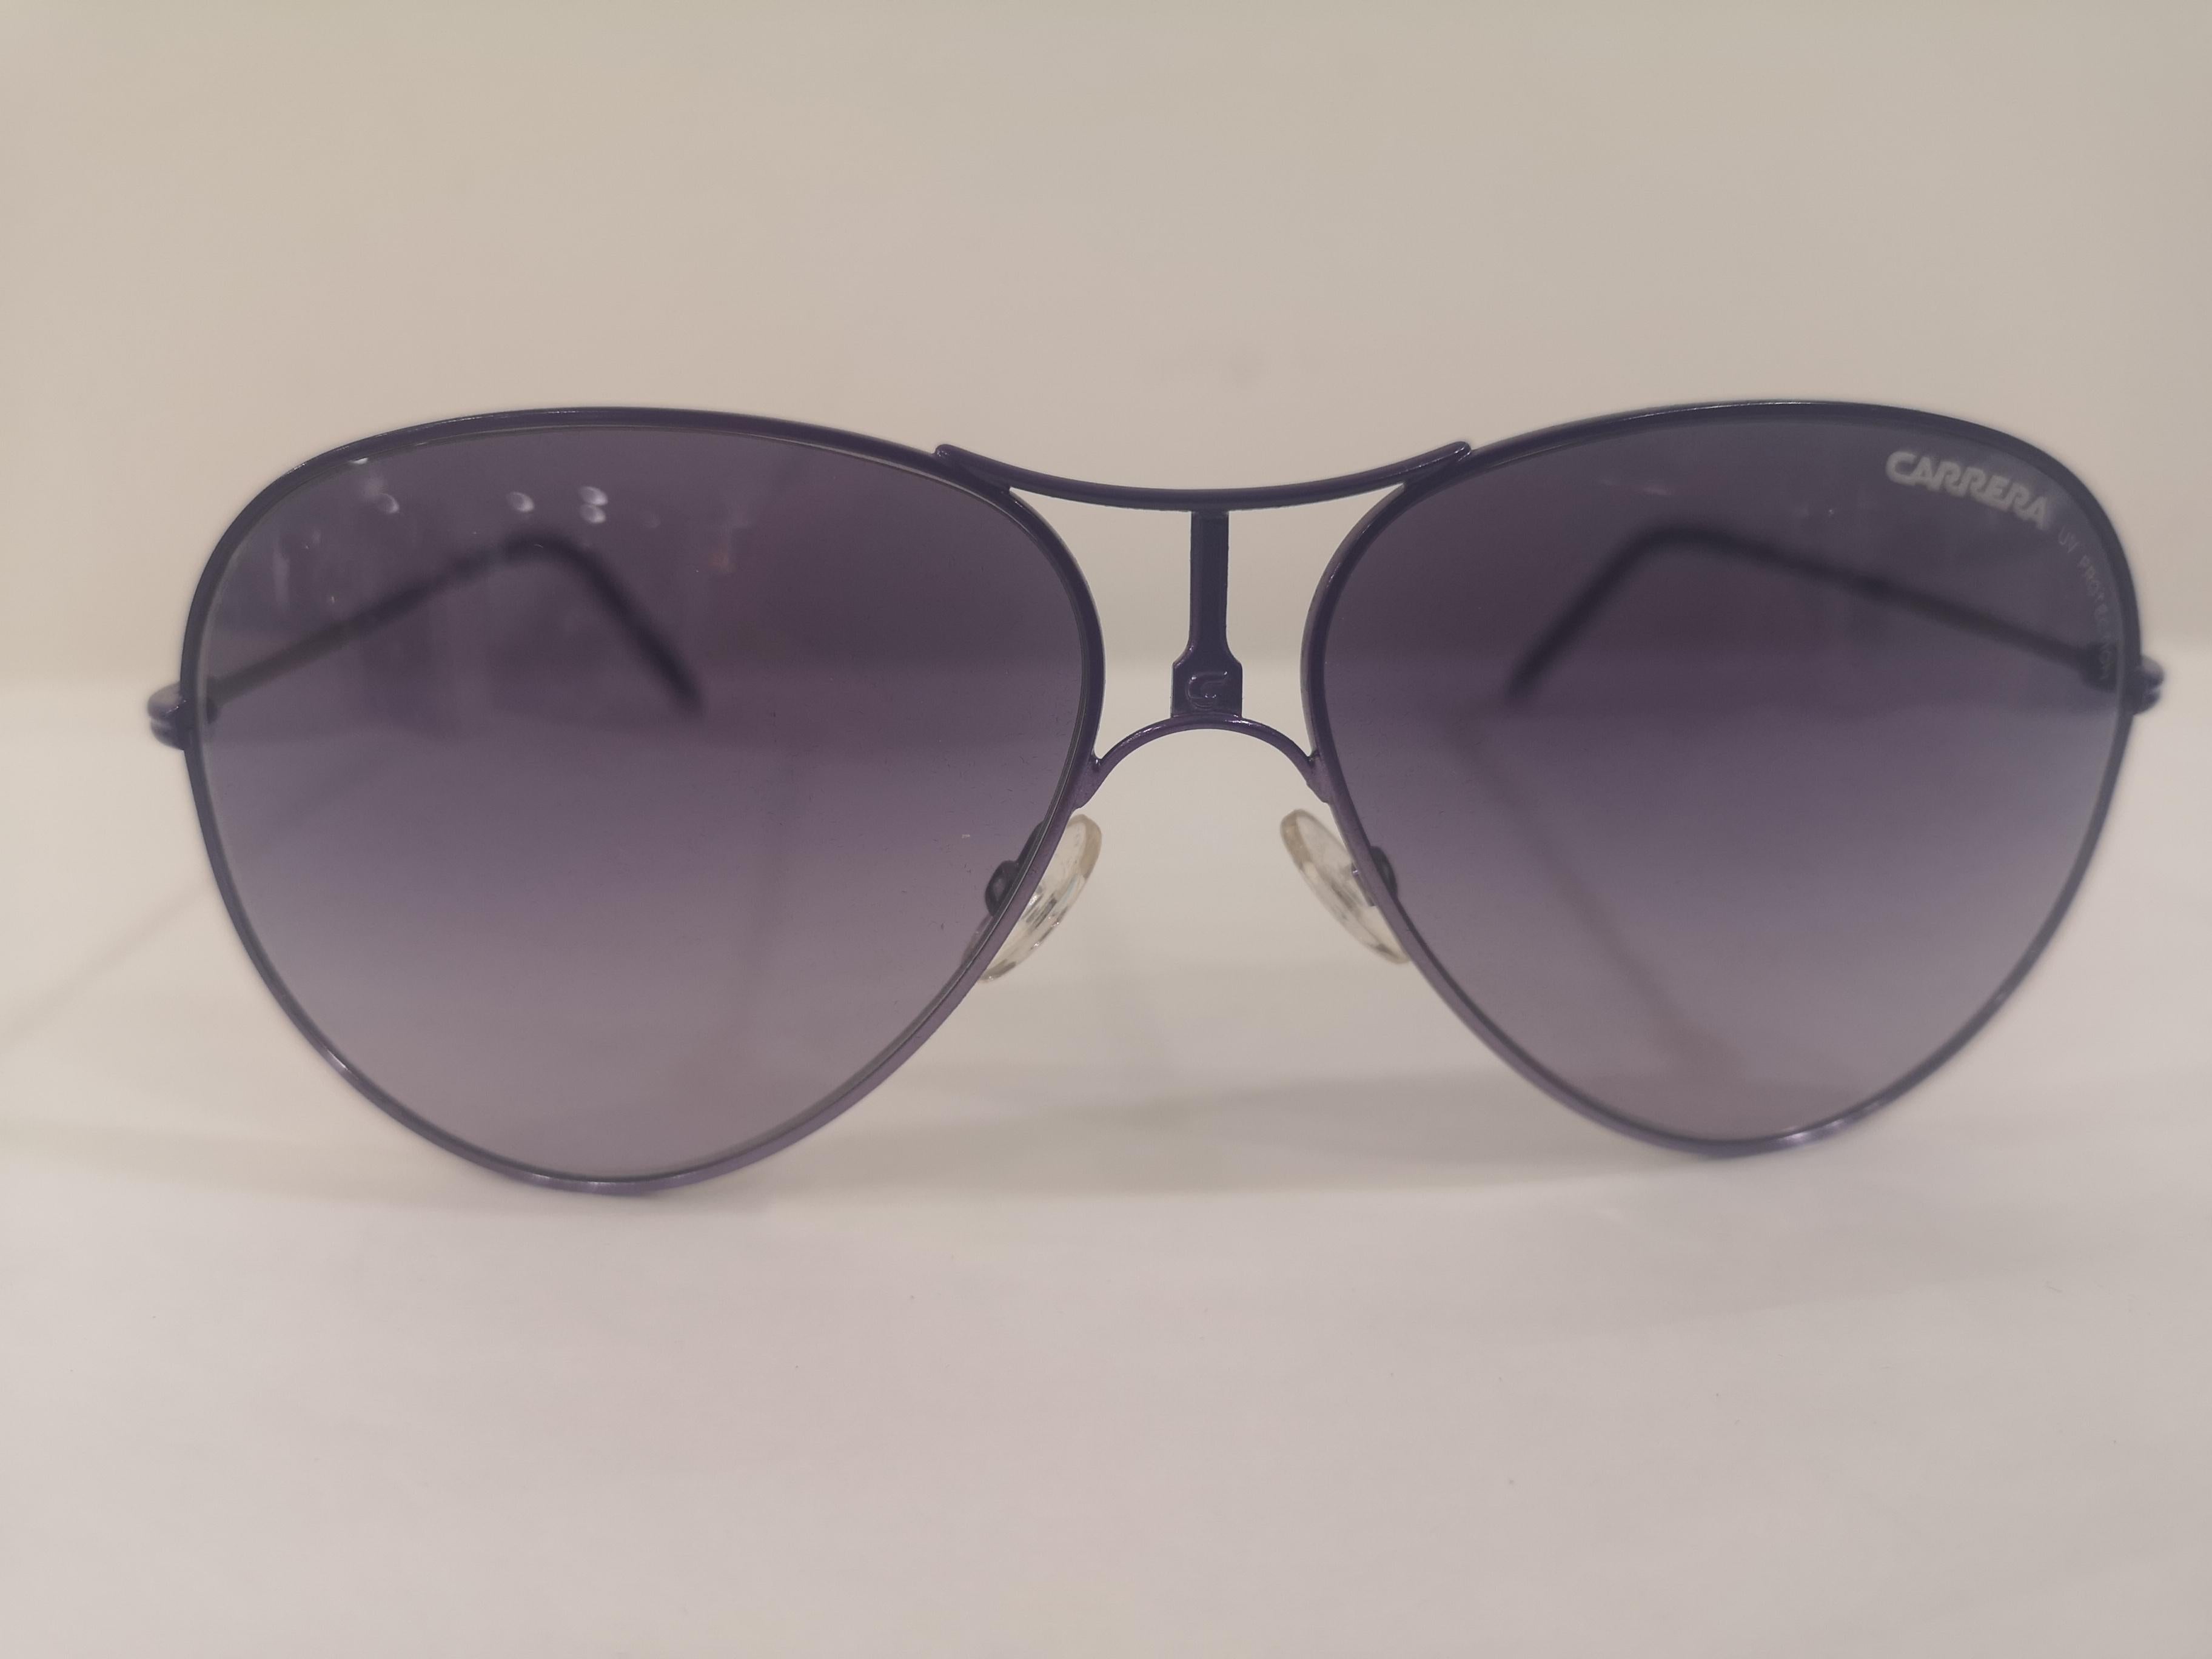 Carrera blue sunglasses NWOT 1